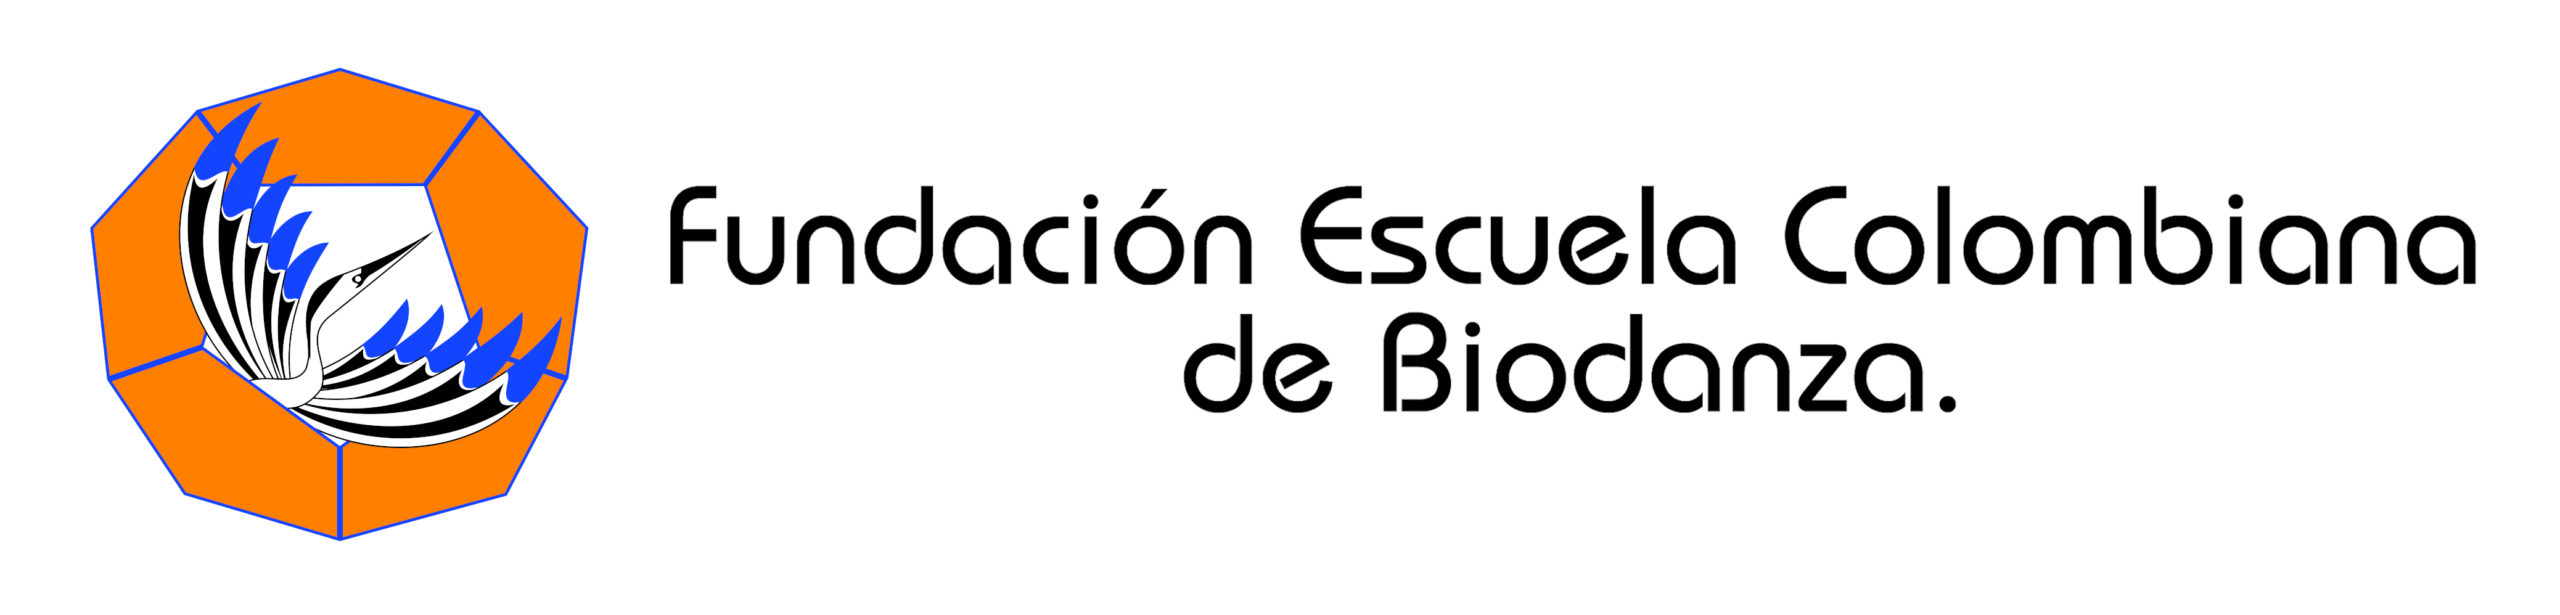 Fundación Escuela Colombiana de Biodanza